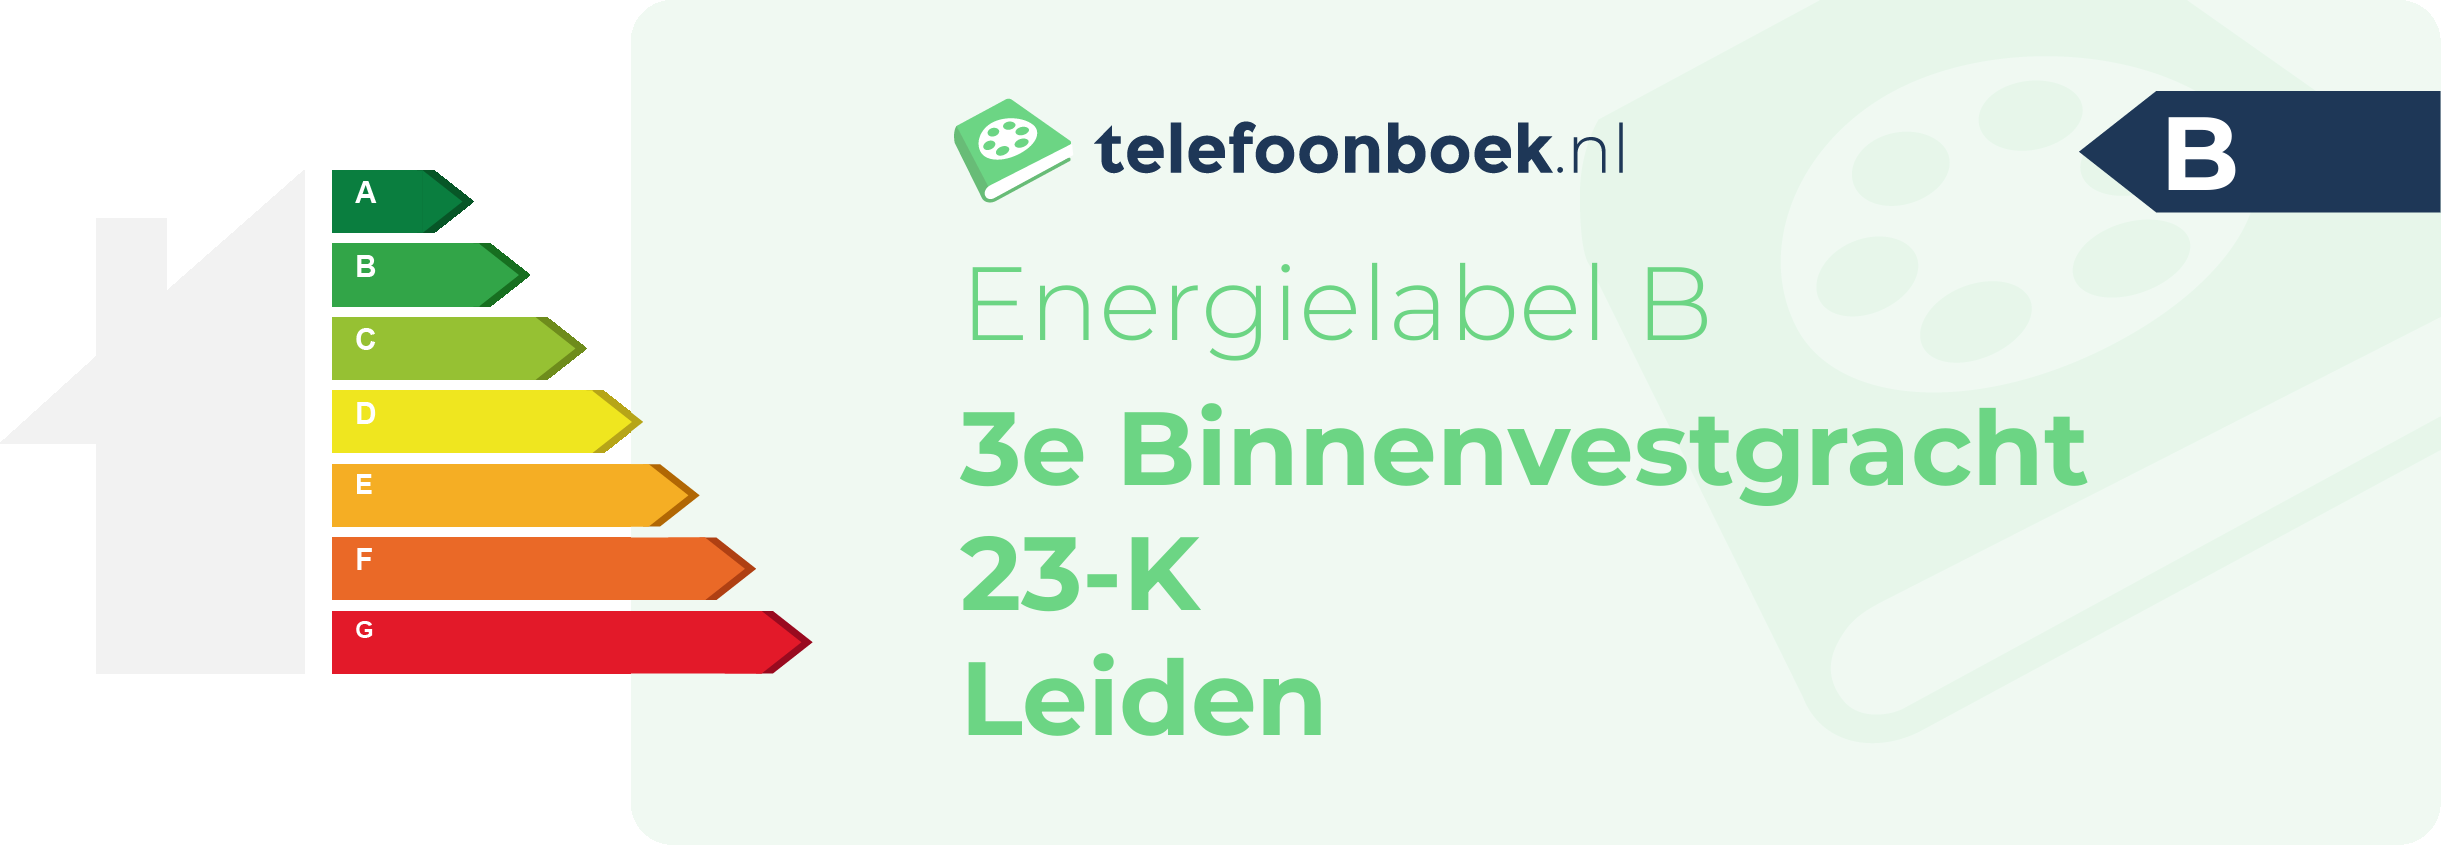 Energielabel 3e Binnenvestgracht 23-K Leiden